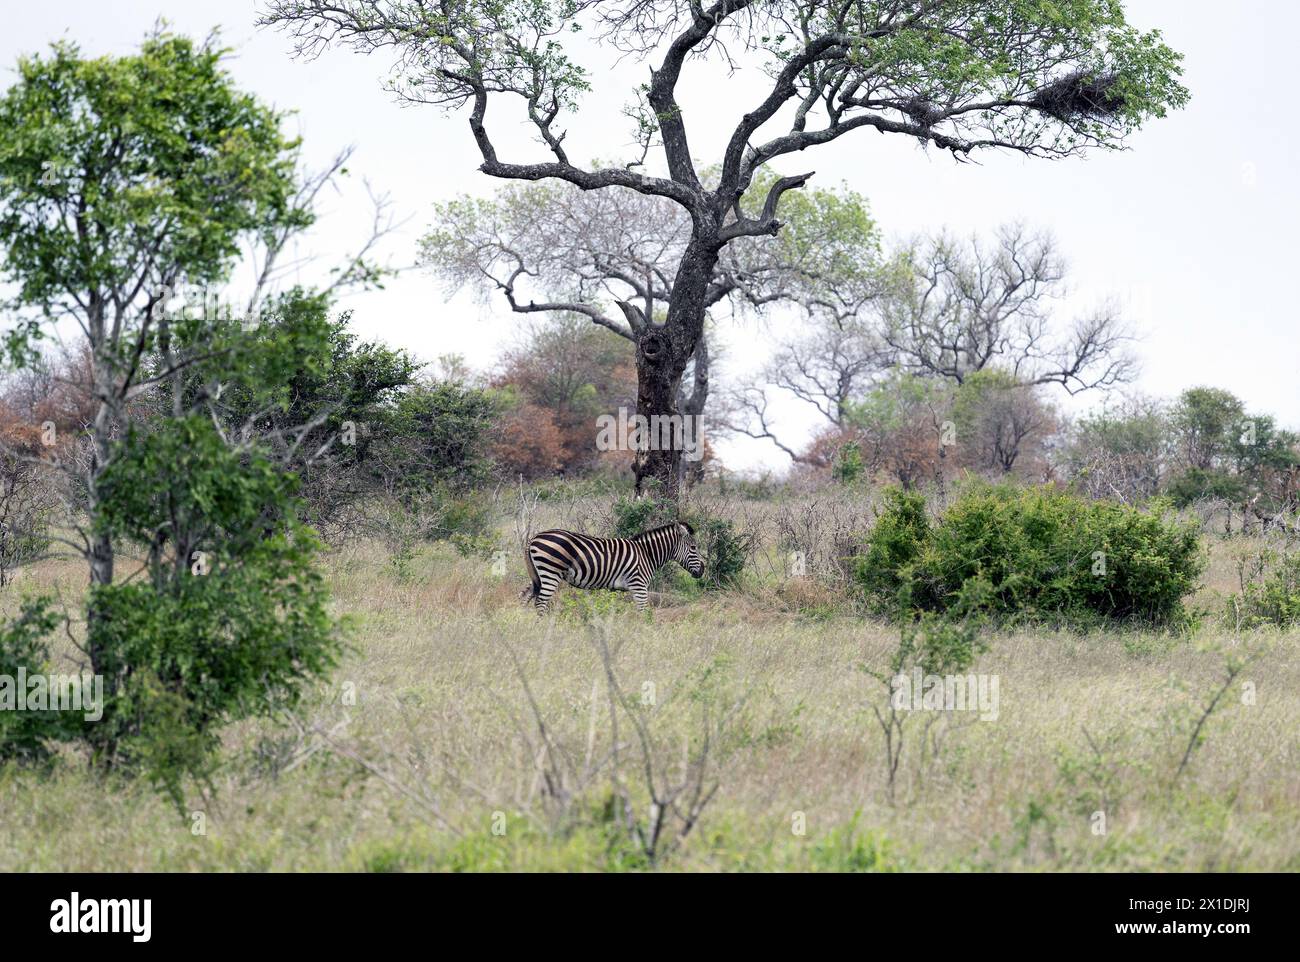 La zebra africana cammina tra alberi verdi e cespugli nella savana. Safari nel Parco Nazionale di Kruger, Sud Africa. Fauna selvatica, selvatica Foto Stock